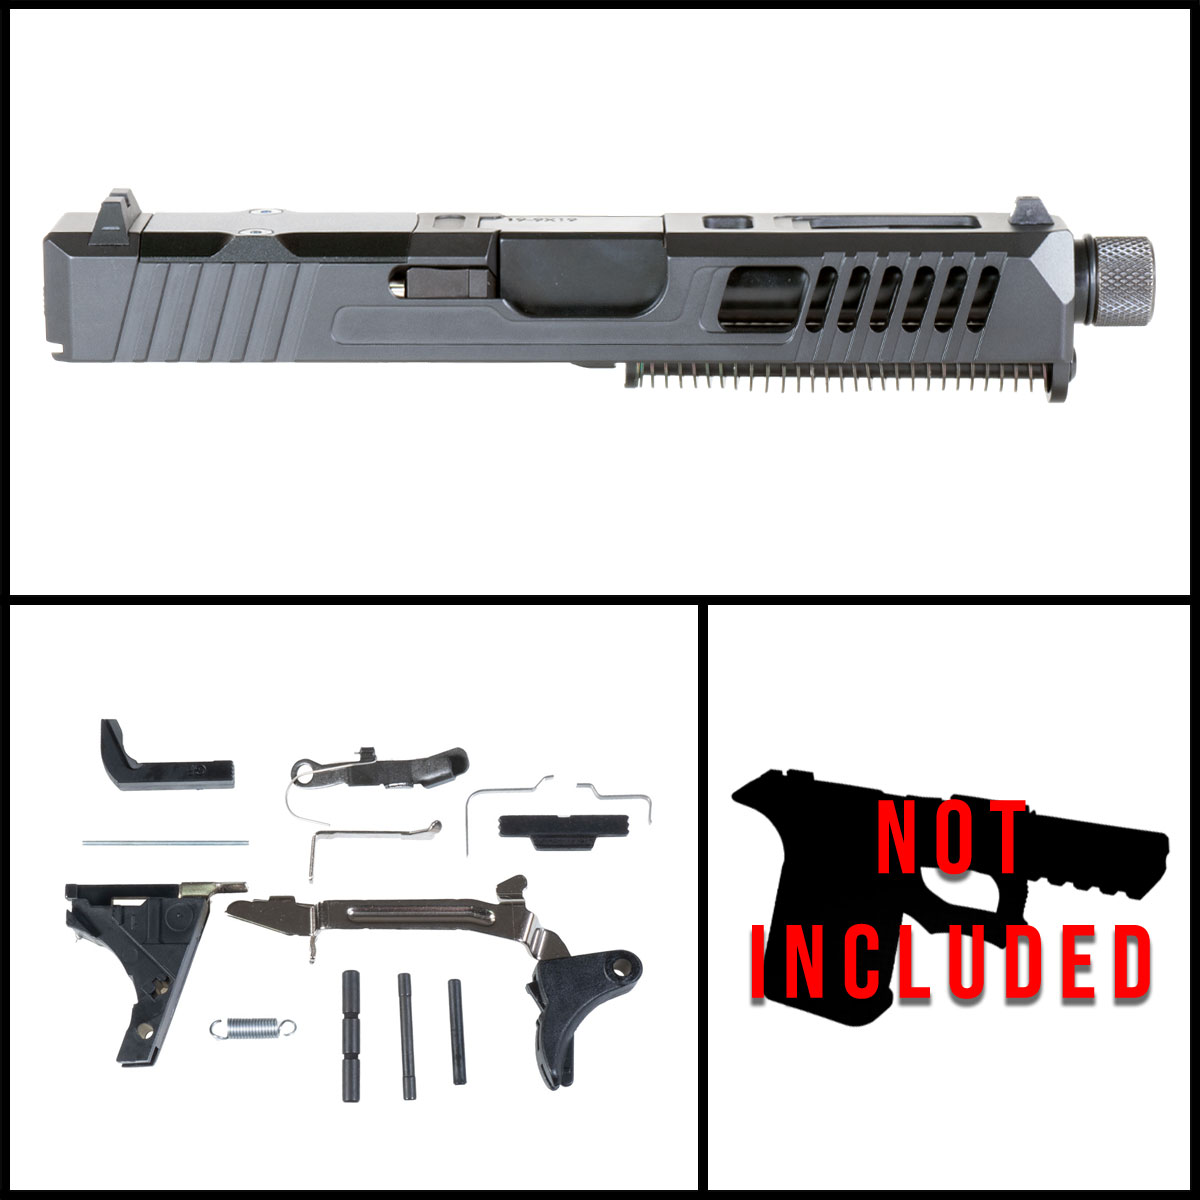 DTT 'Agartha' 9mm Full Pistol Build Kits (Everything Minus Frame) - Glock 19 Gen 1-3 Compatible